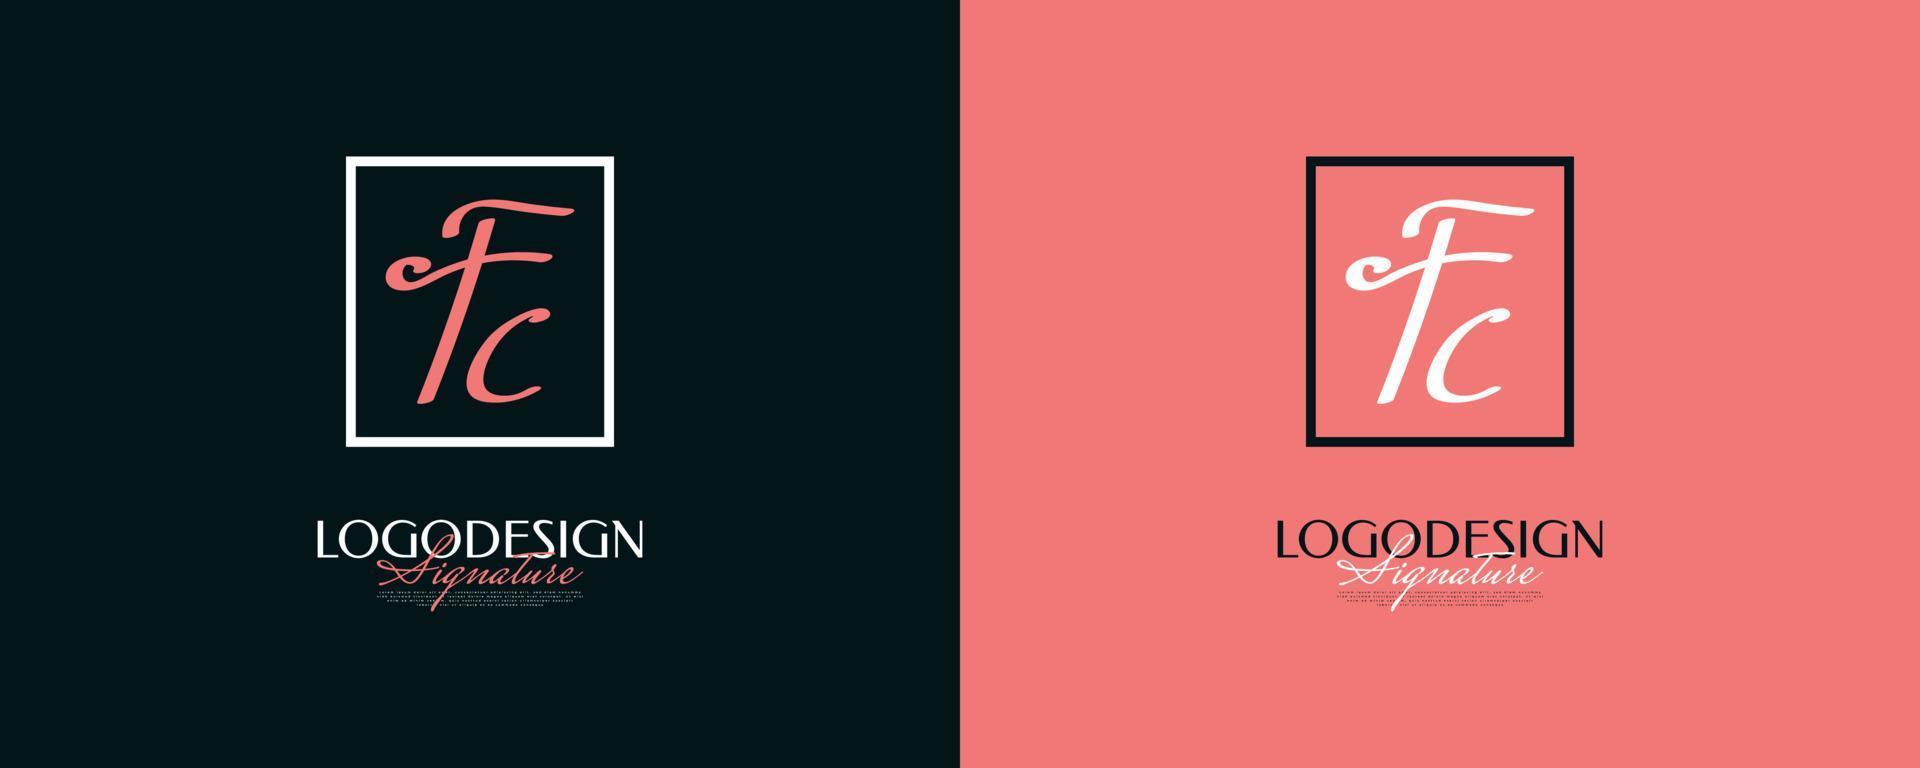 diseño inicial del logotipo f y c con un estilo de escritura elegante y minimalista. logotipo o símbolo de la firma fc para bodas, moda, joyería, boutique e identidad comercial vector